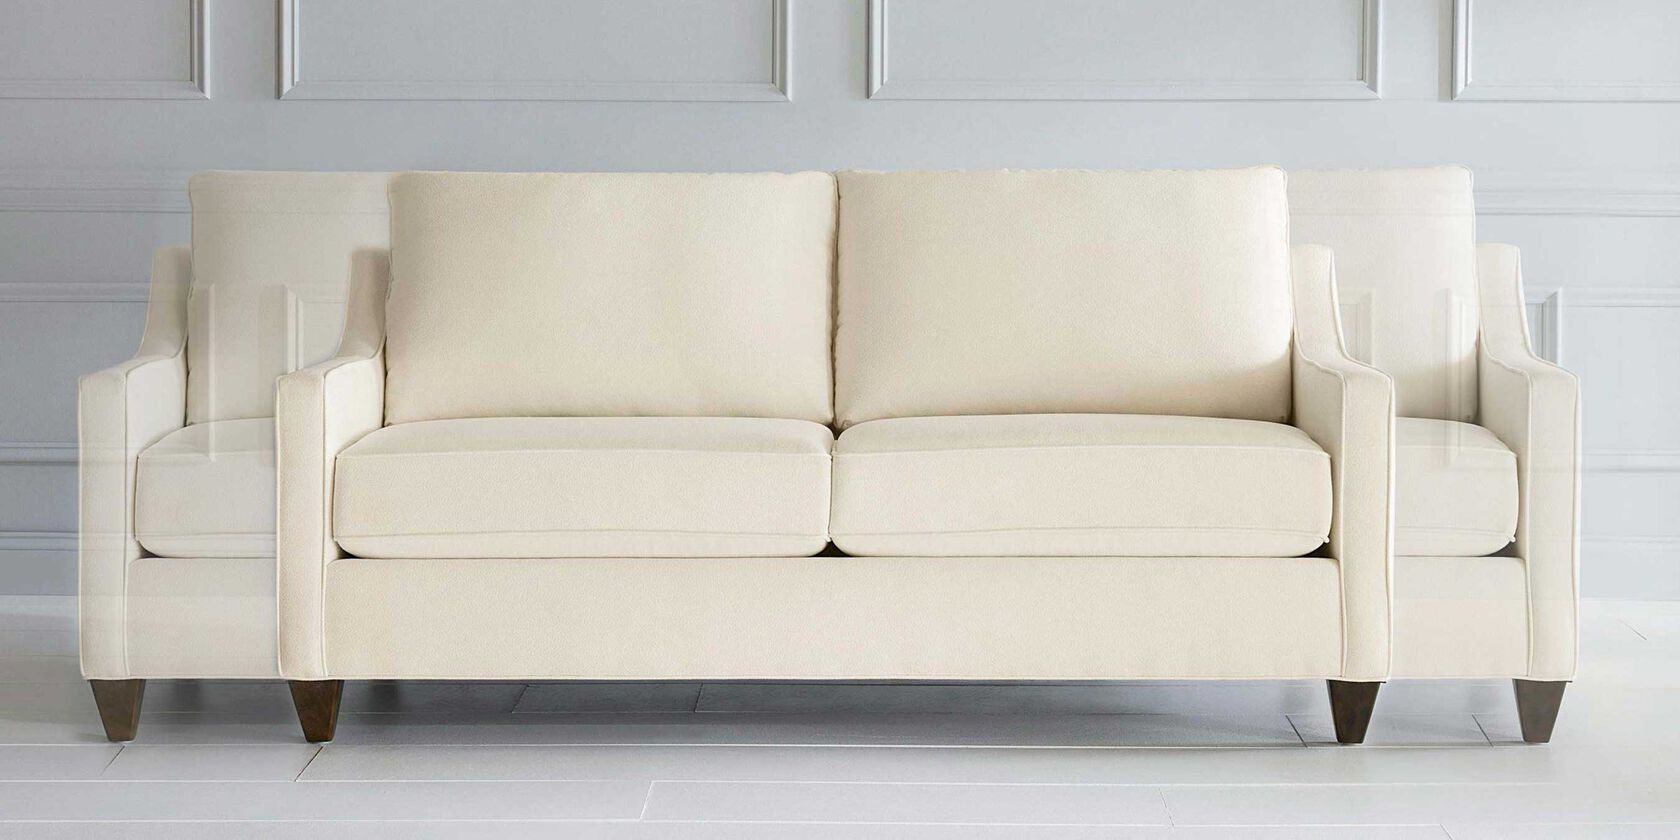 Custom upholstery sofas demonstrating sofa length